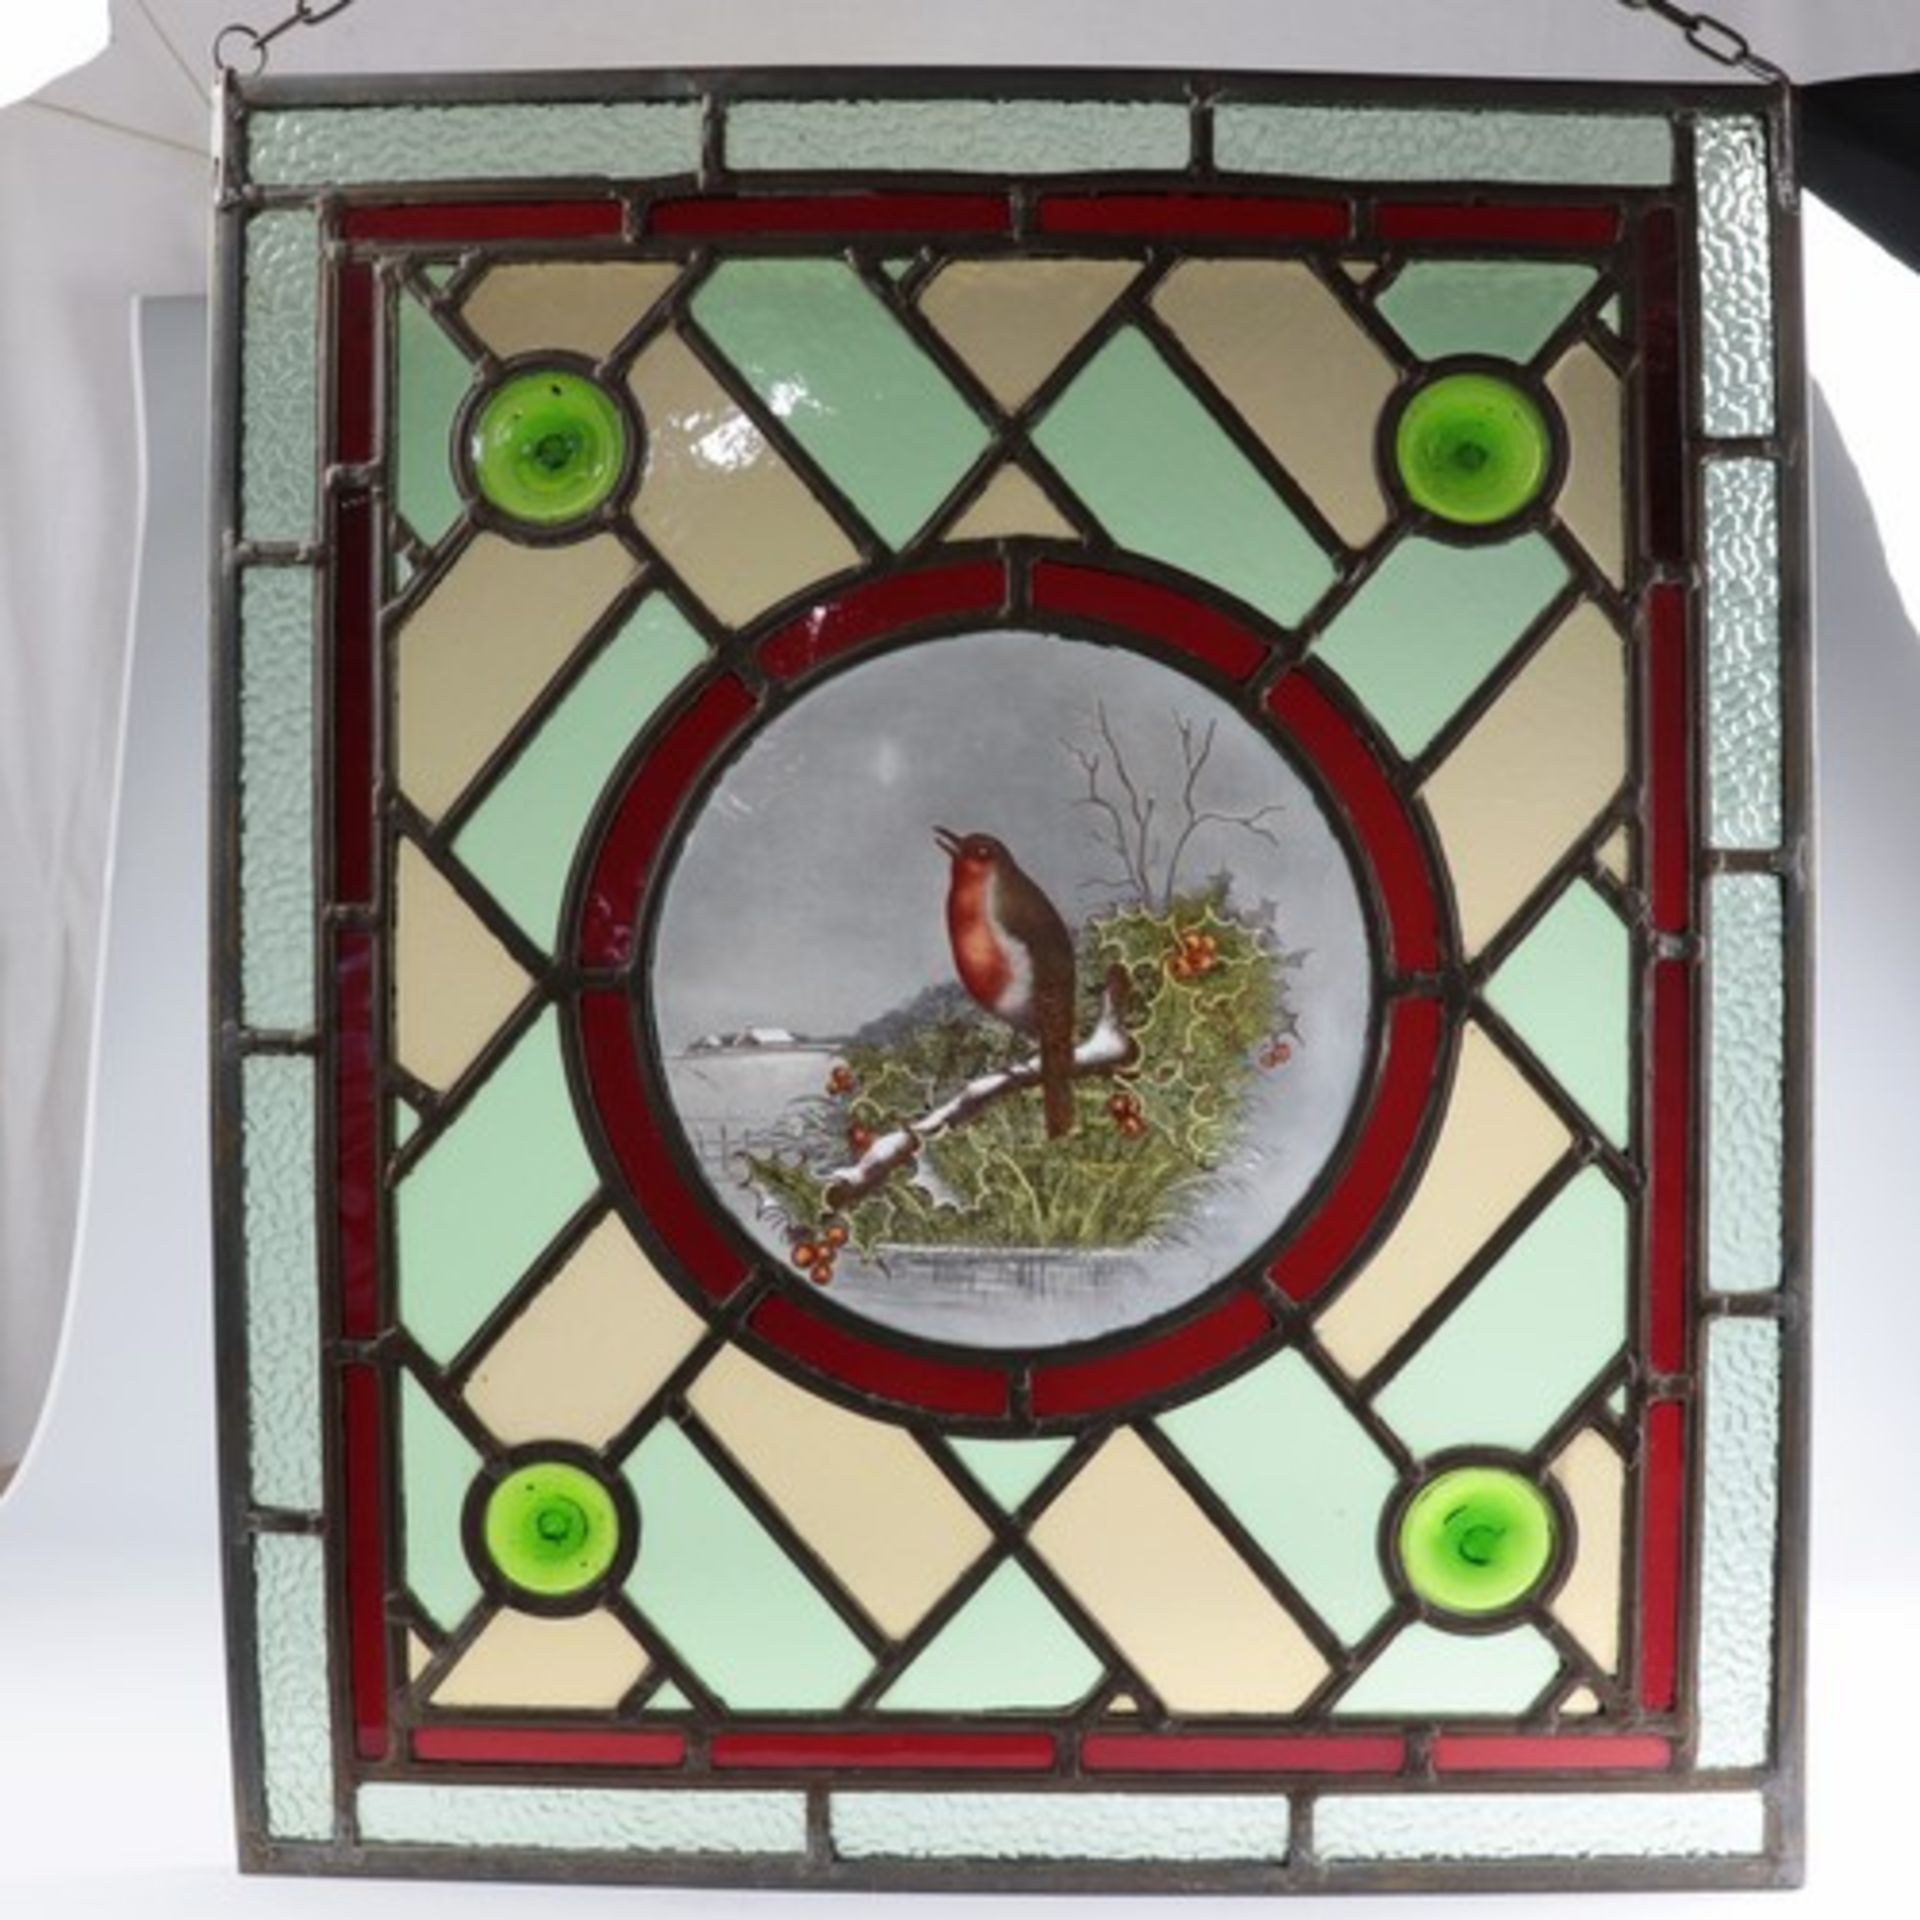 Glasfensterum 1900, farblose u. polychrome Bleiverglasung in rechteckiger Metallrahmung, außen - Bild 2 aus 4